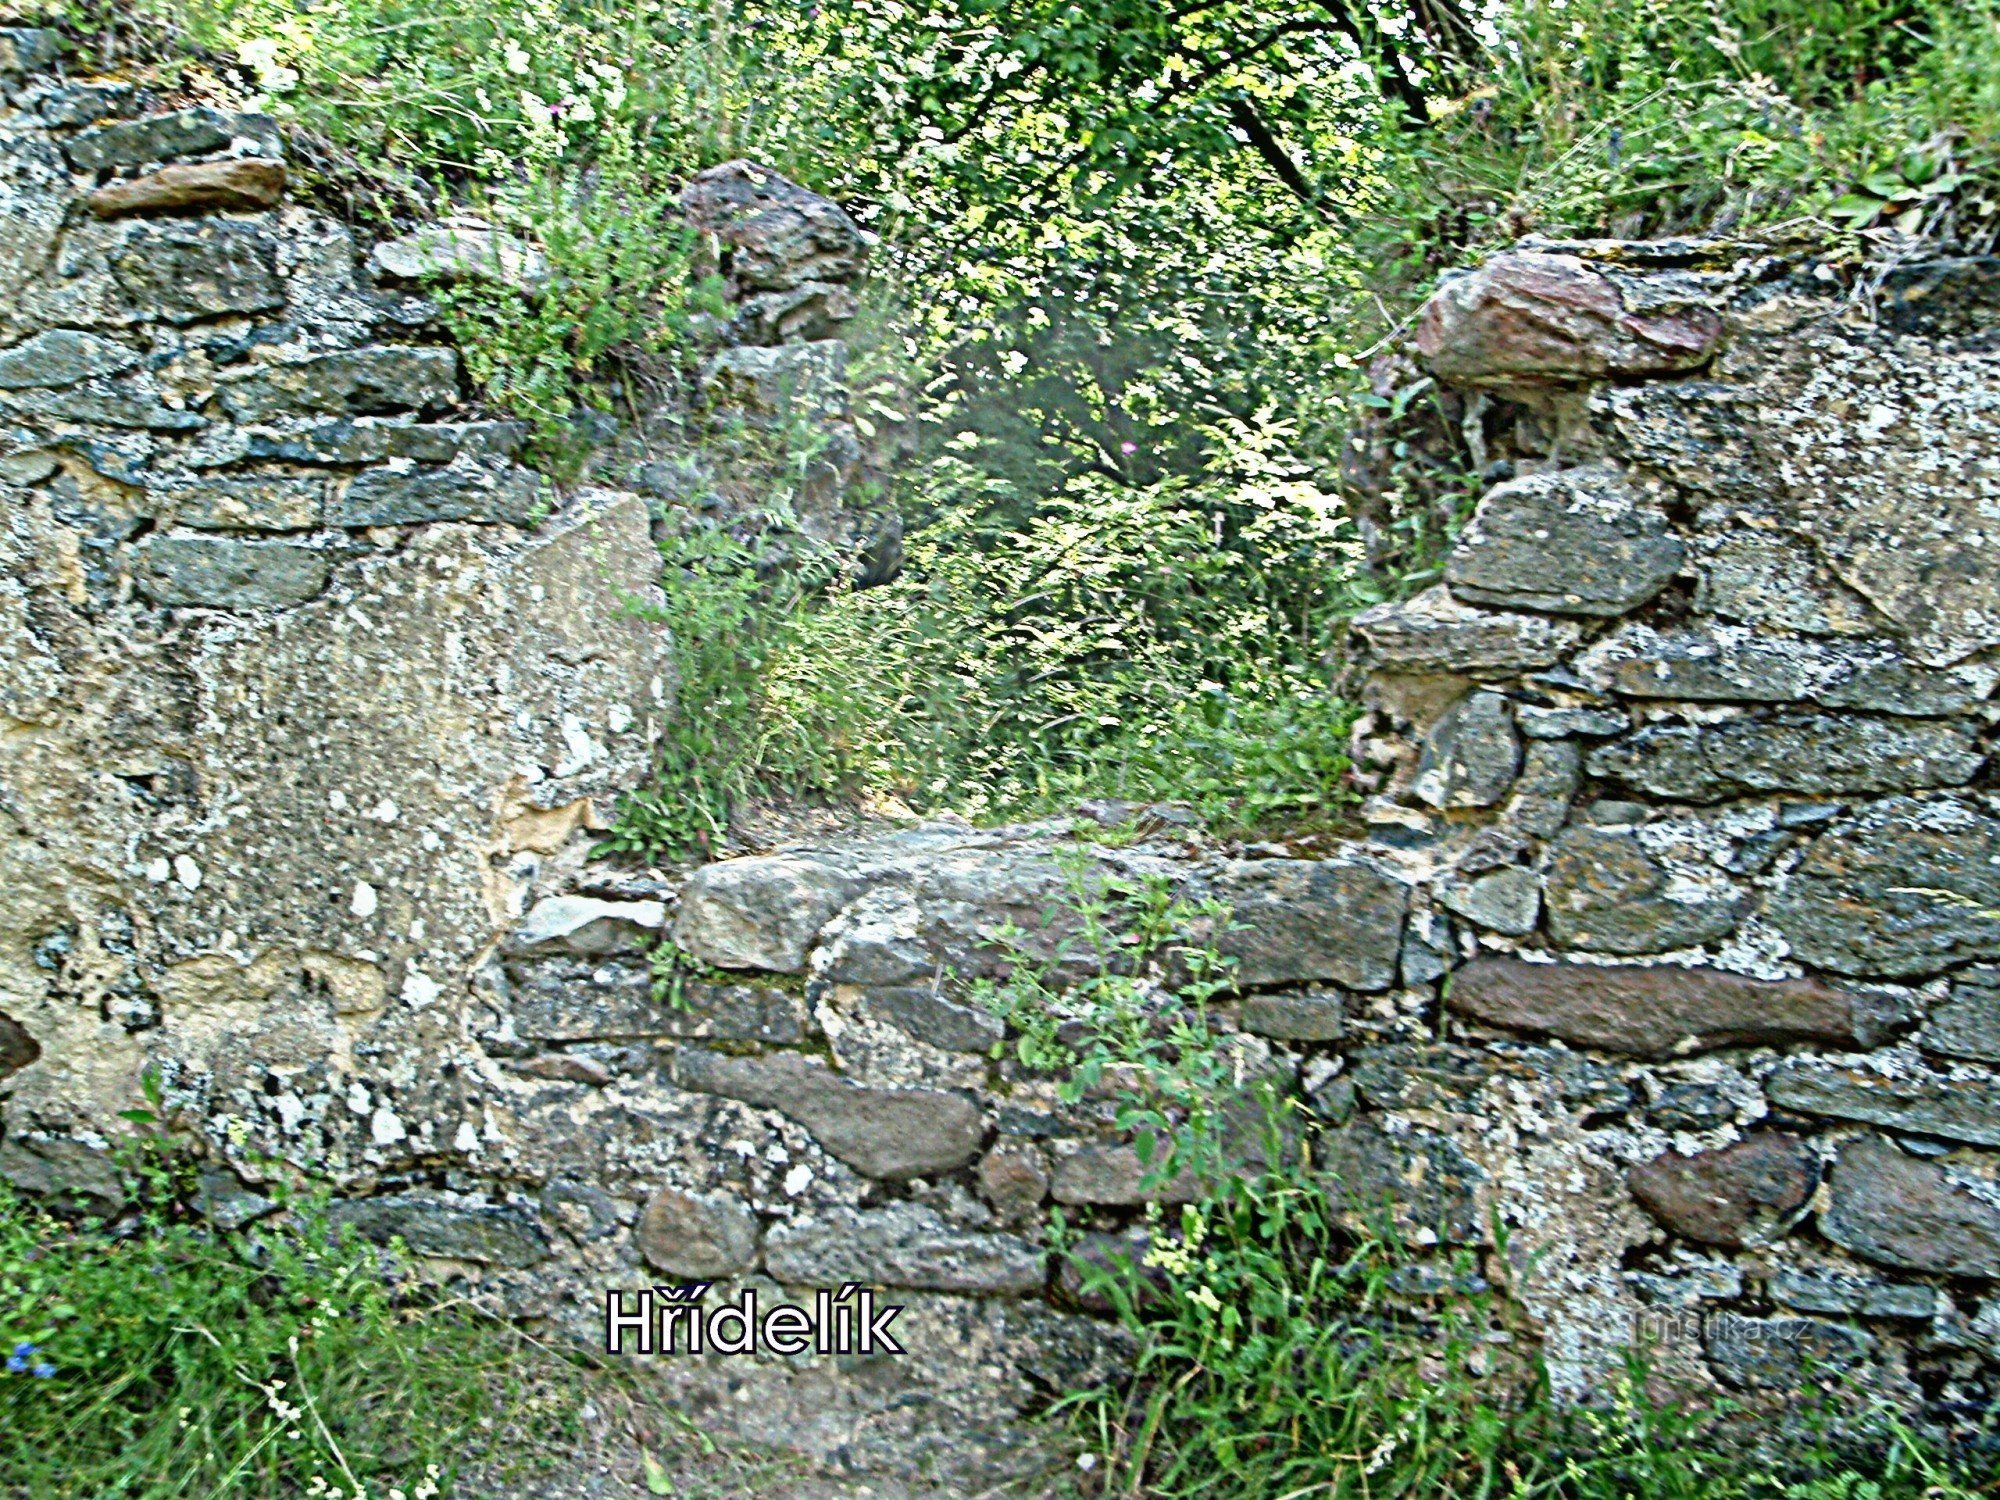 Blíževedly - Hřídelík 城堡的废墟